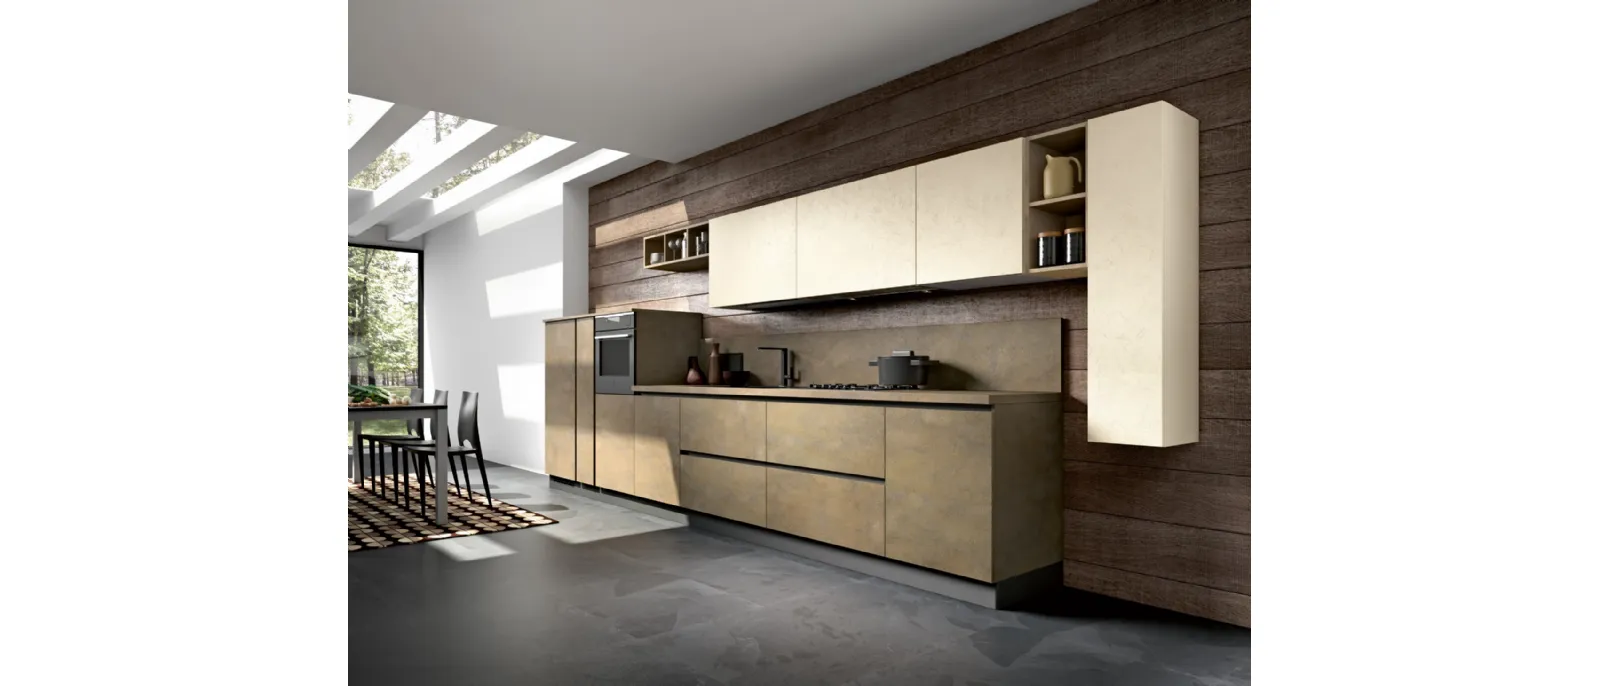 Modern linear kitchen Stella composition 04 by Essebi.